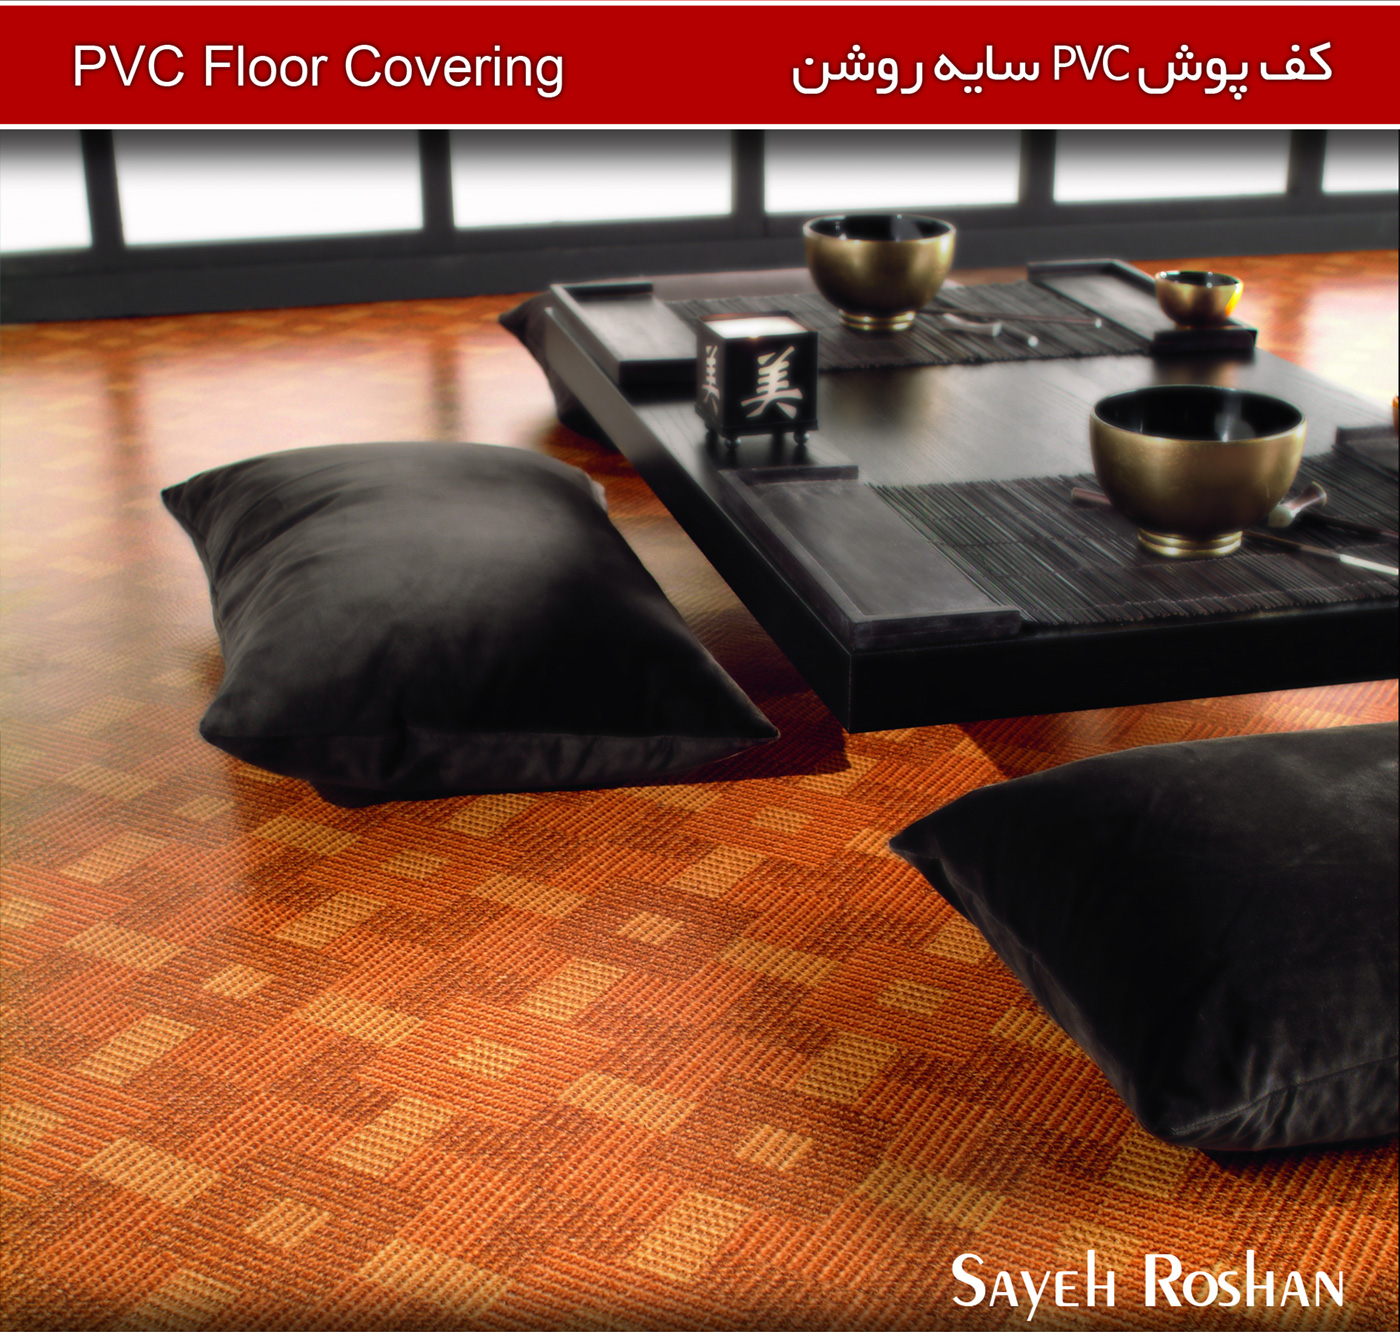 کف پوش PVC سایه روشن | Sayeh Roshan PVC Floor Covering